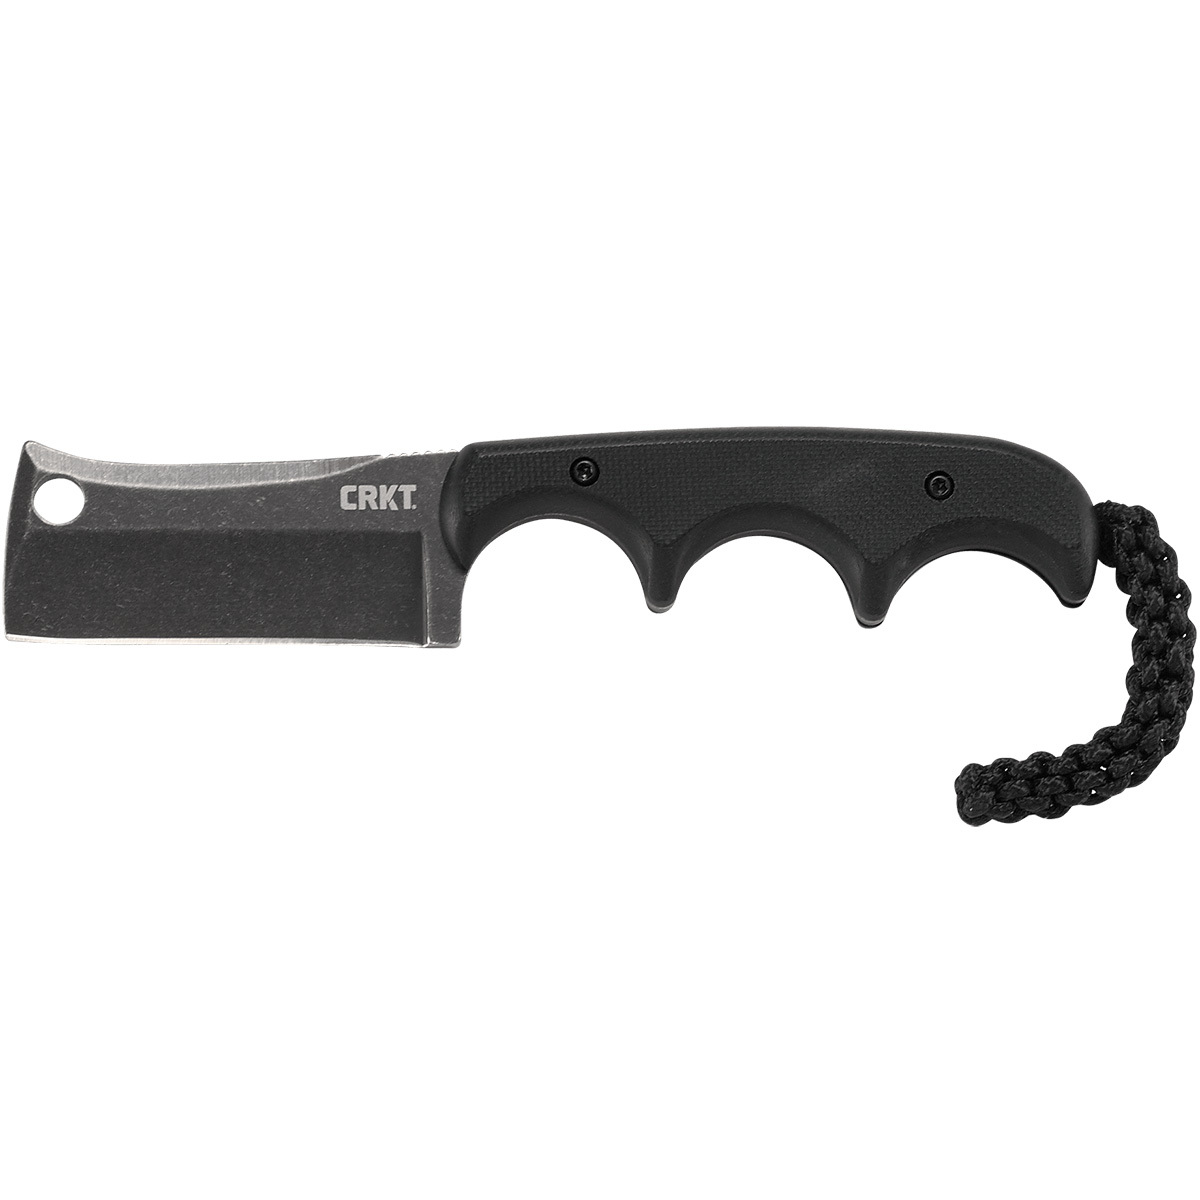 Шейный нож с фиксированным клинком CRKT Minimalist Cleaver Blackout, сталь 5Cr15MoV, рукоять G10 - фото 1